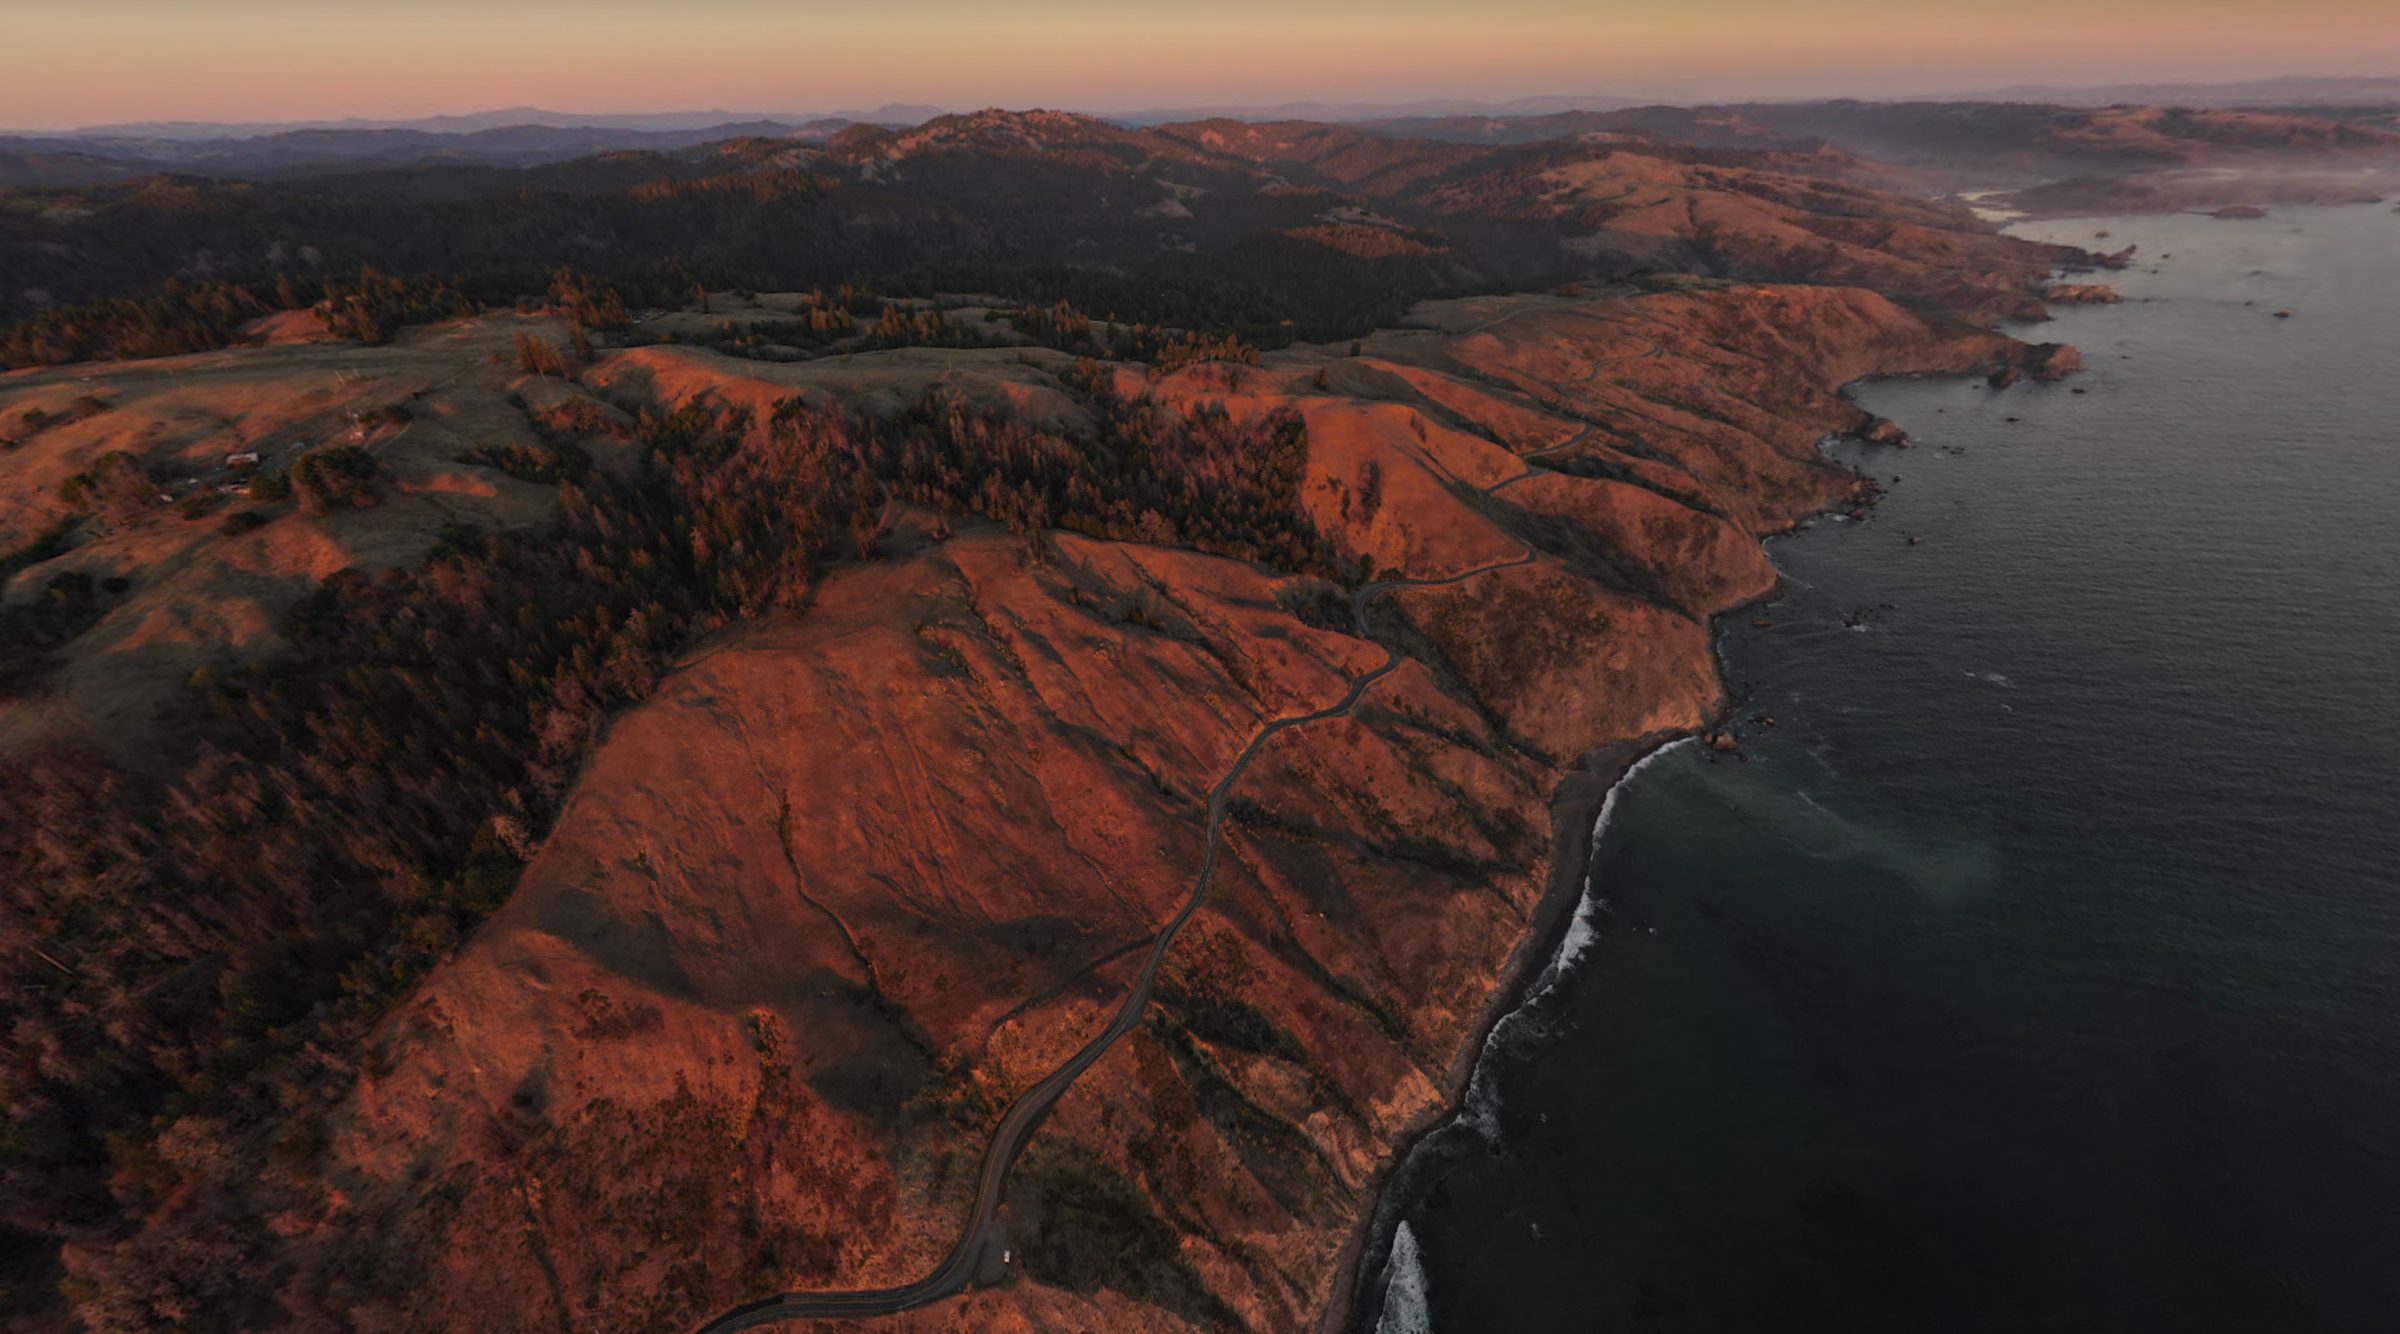 La ondulada y sinuosa carretera costera Highway 1 / Route 101 en California desde el aire con el dron